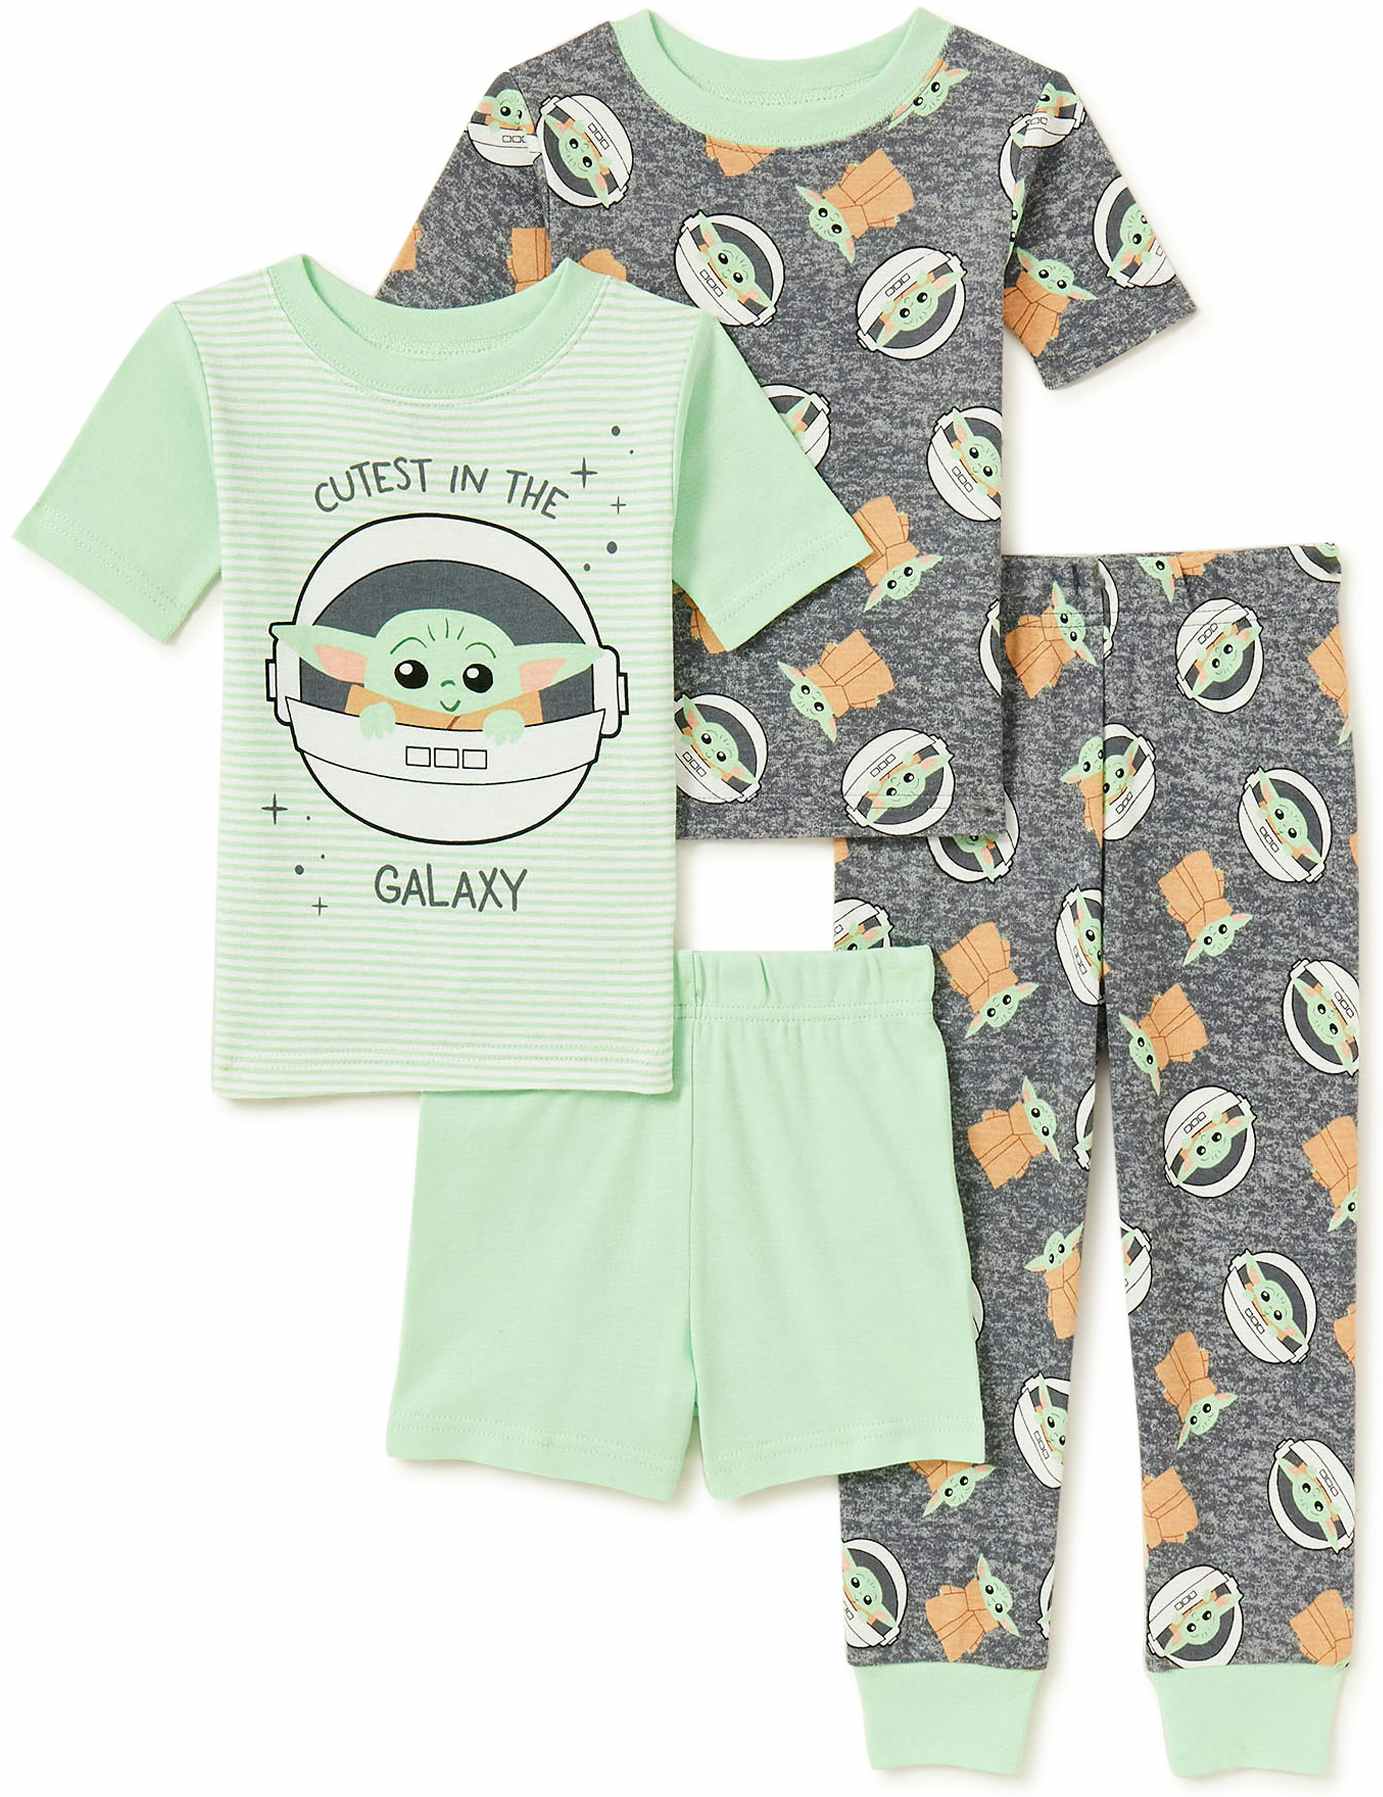 walmart-star-wars-baby-yoda-toddler-pajamas-2021